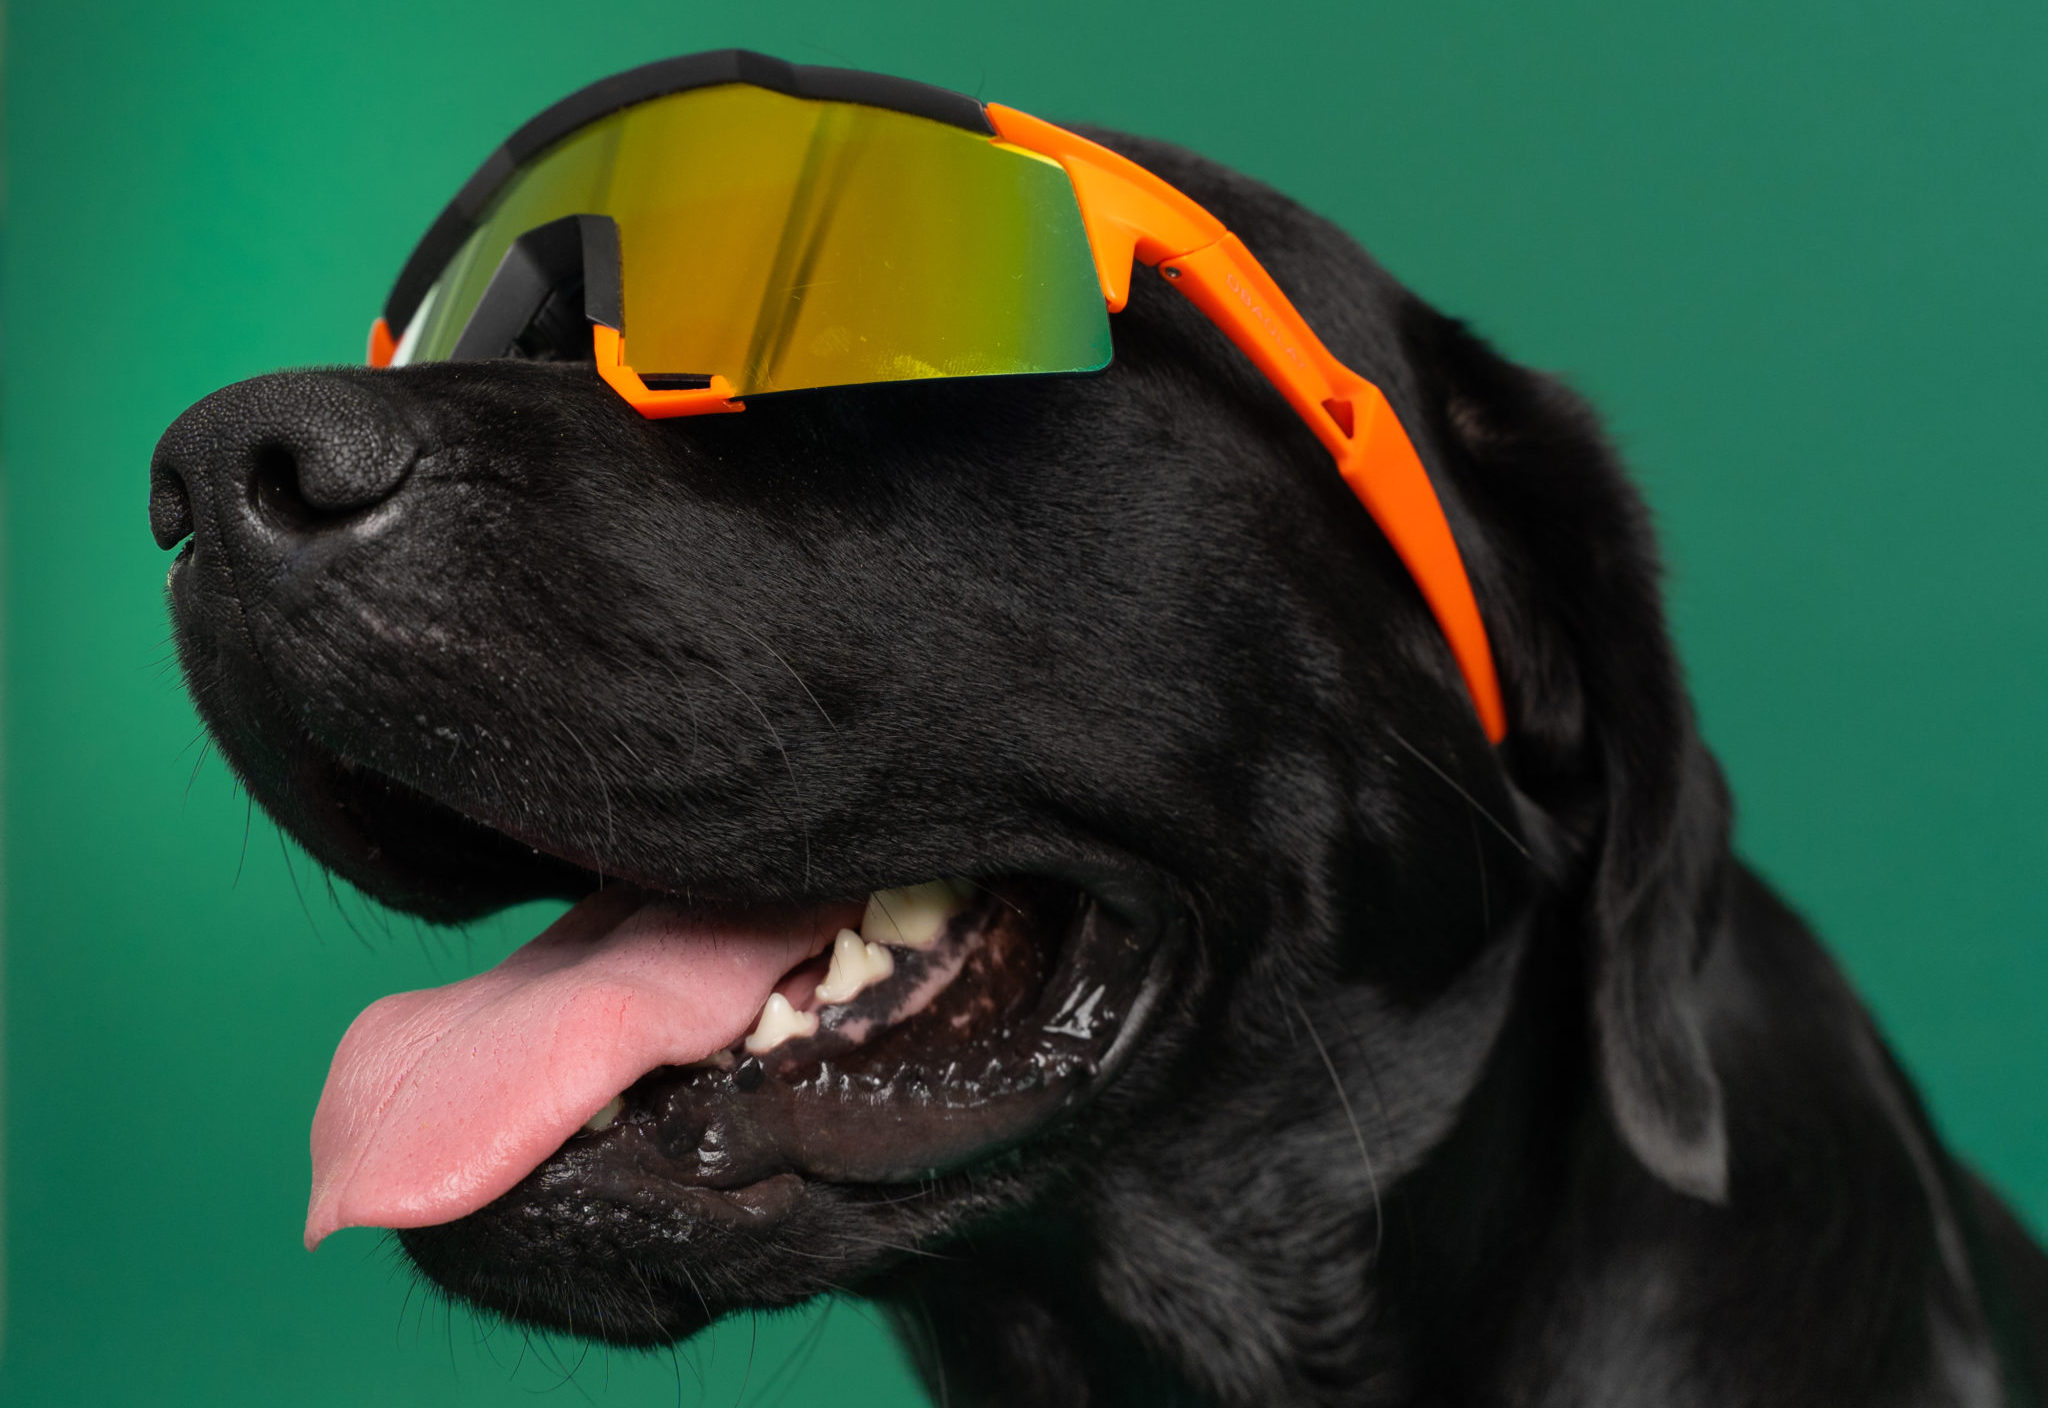 Er hunde farveblinde, og meget kan hunde se? | Vuffeli